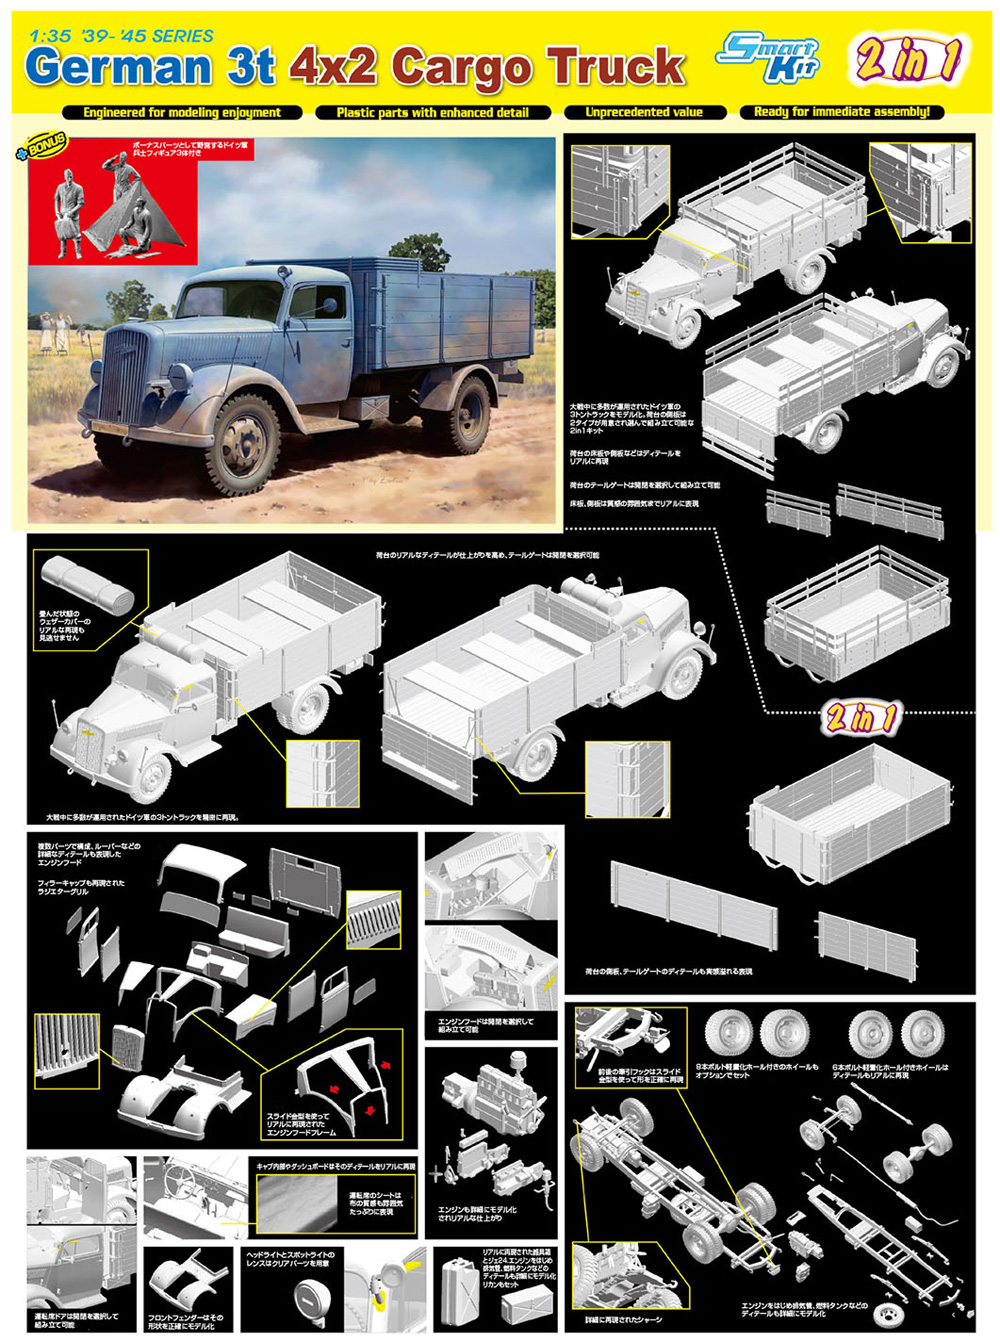 3トン 4×2 カーゴトラック w/野営するドイツ兵フィギュア プラモデル (ドラゴン 1/35 39-45 Series No.6974) 商品画像_1